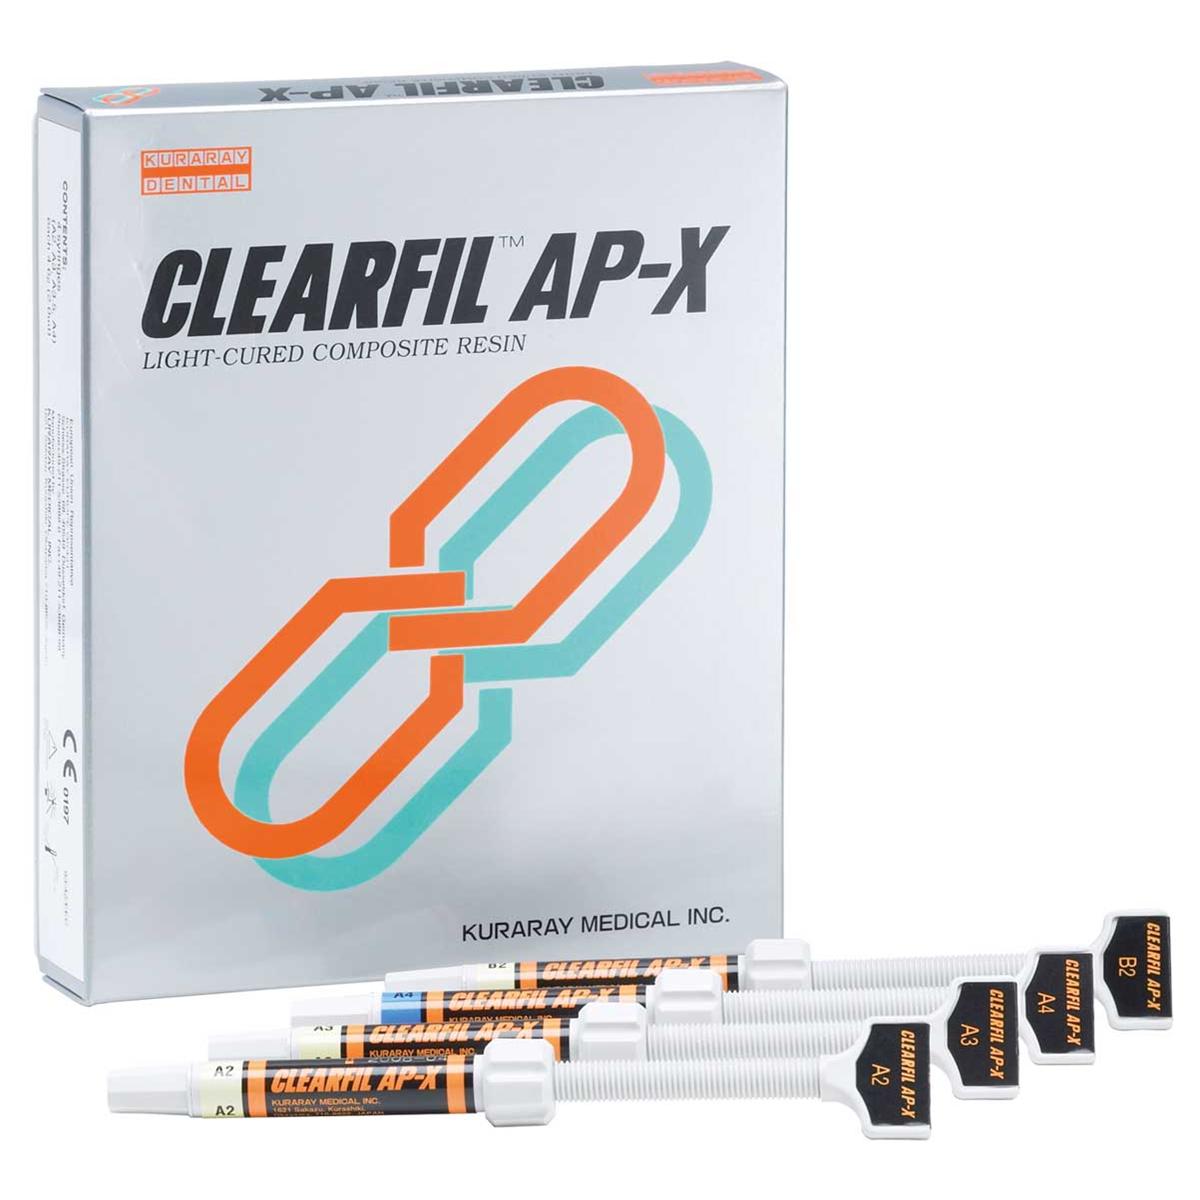 Clearfil AP-X: PLT XL, 0.20 g x 20, kuraray #1751KA